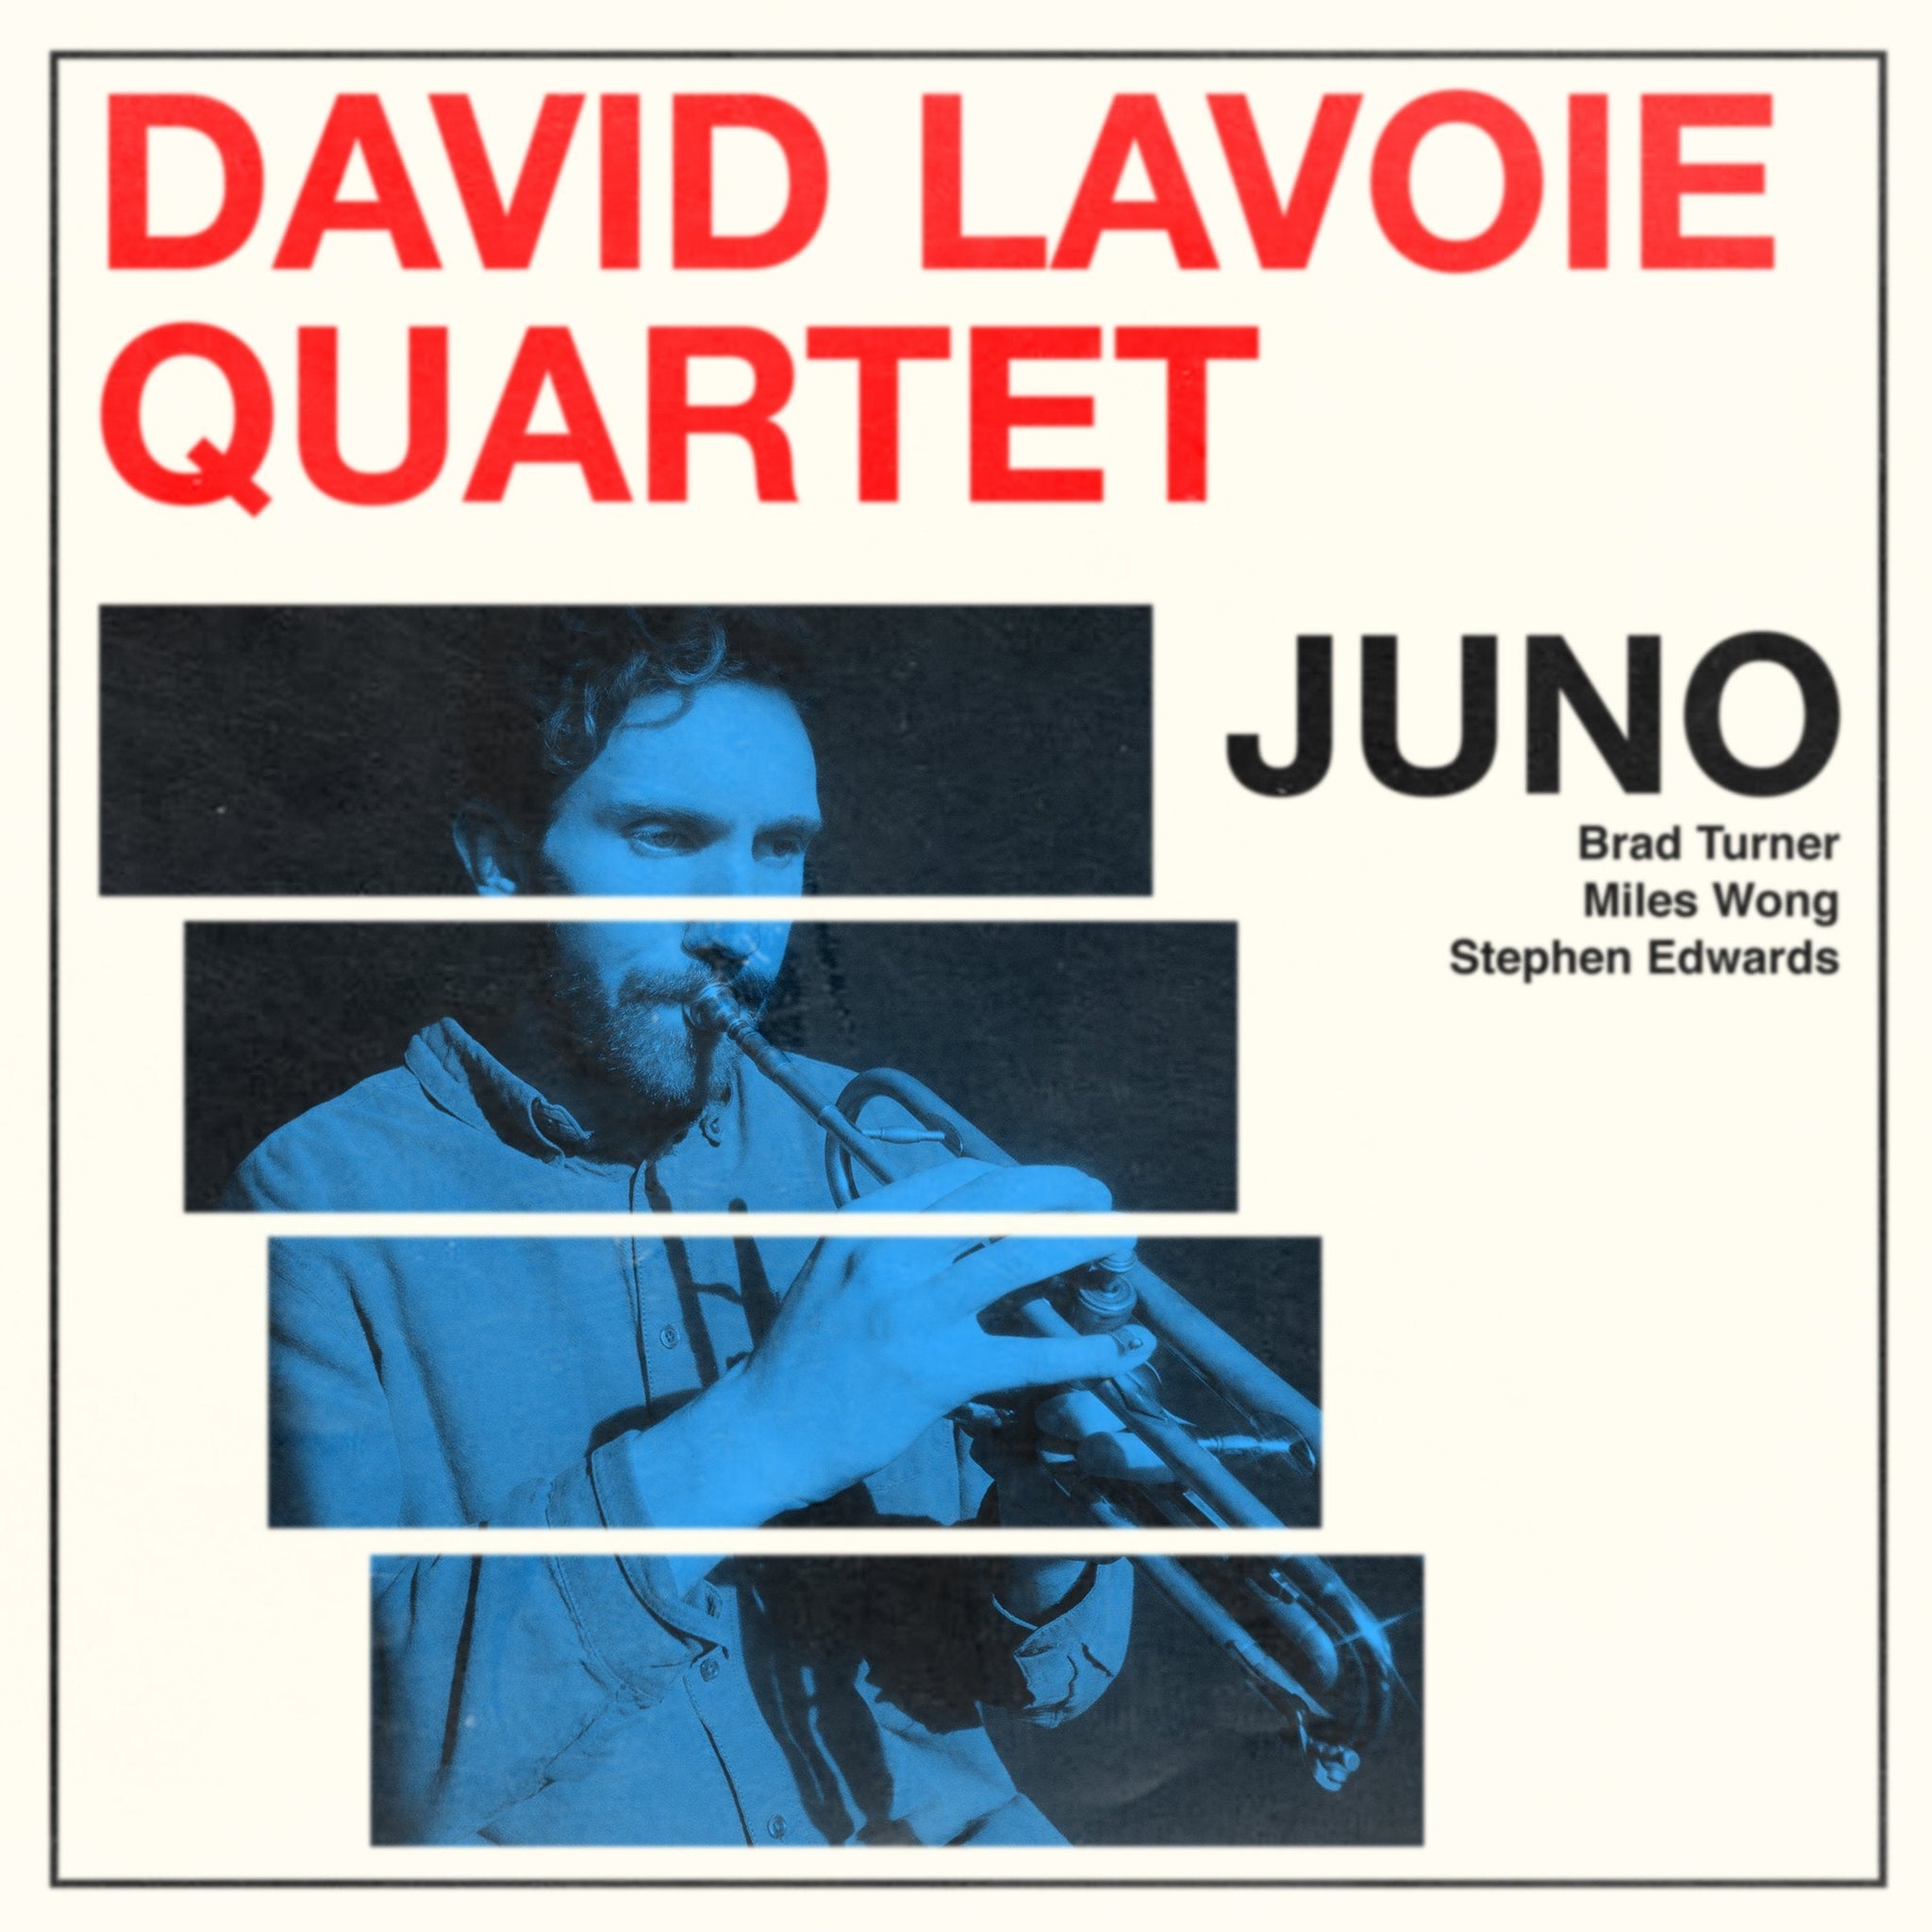 David Lavoie Quartet - Juno - Inner Ocean Records